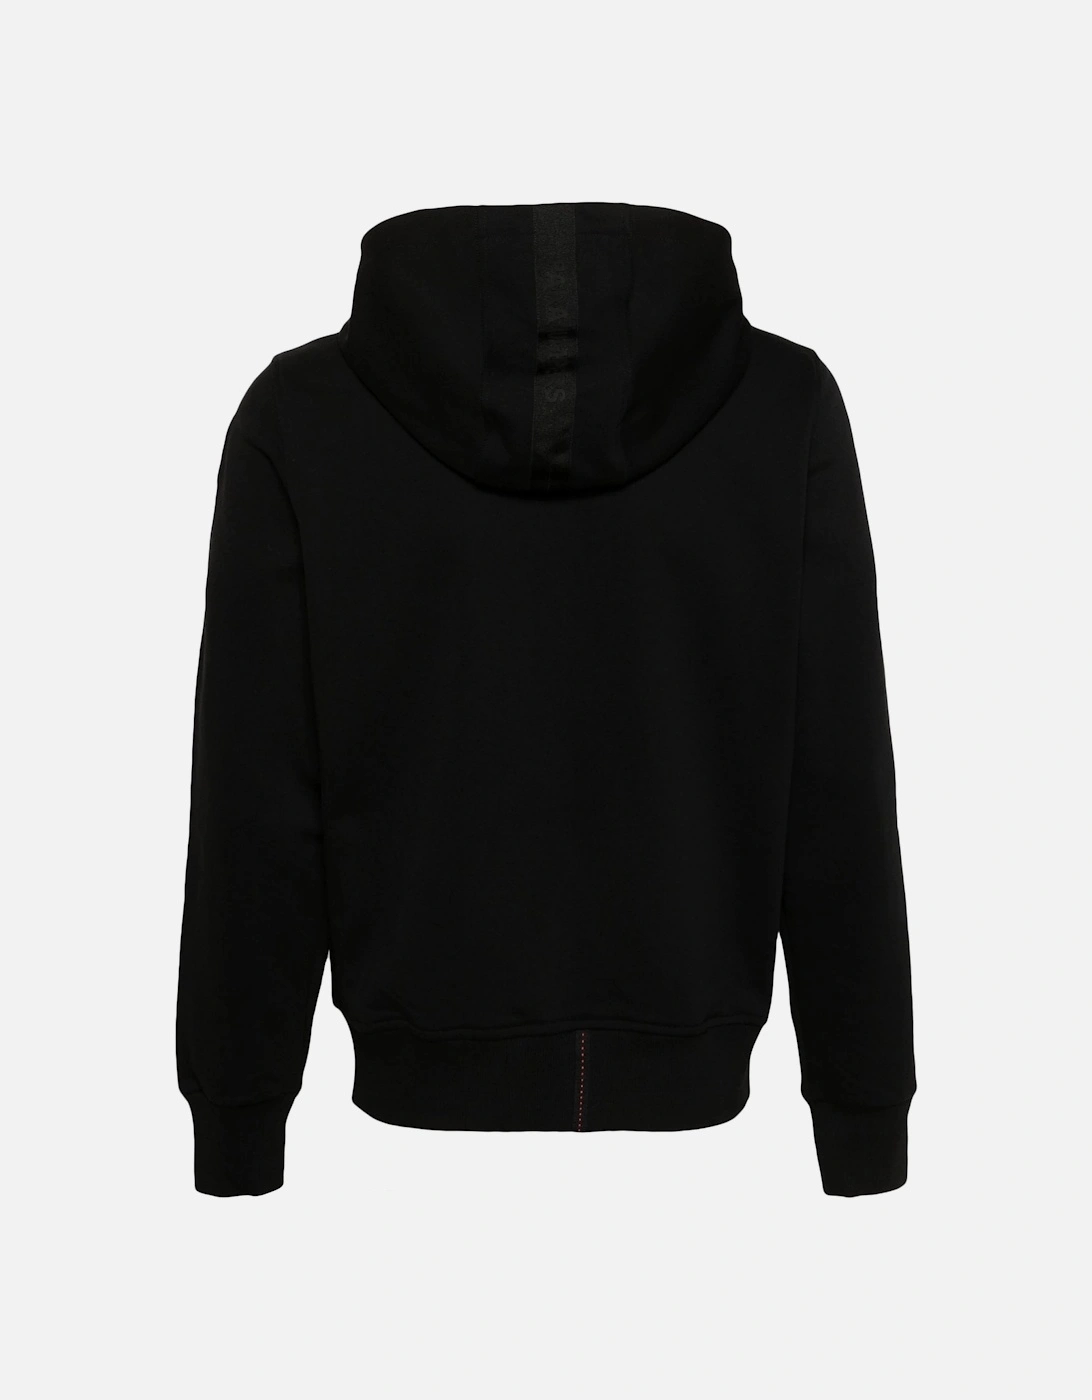 Aldrin Zip Hooded Black Sweatshirt